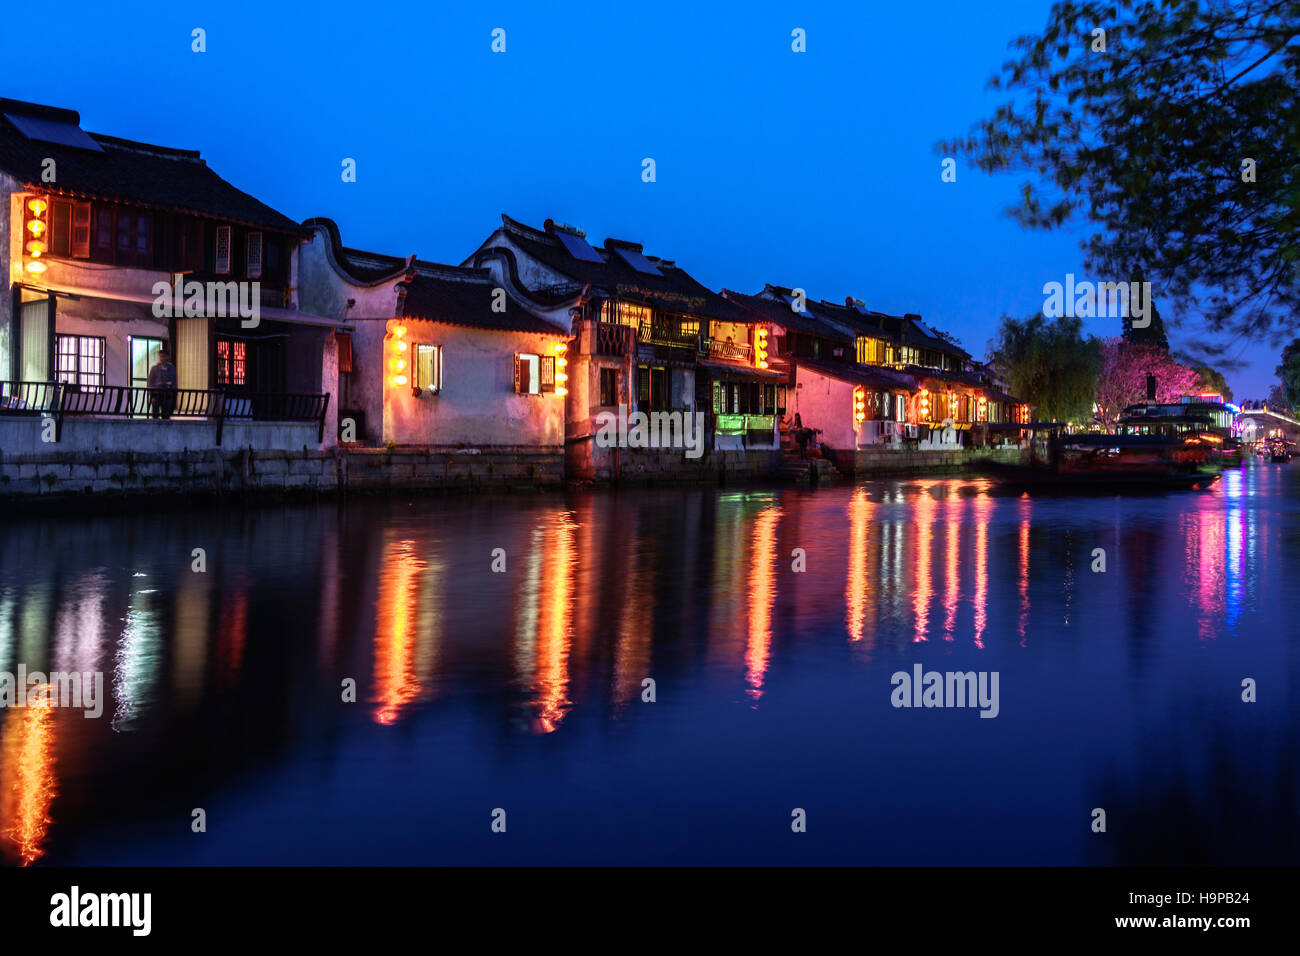 Xitang ancient town,Jiaxing City,Zhejiang province,China Stock Photo